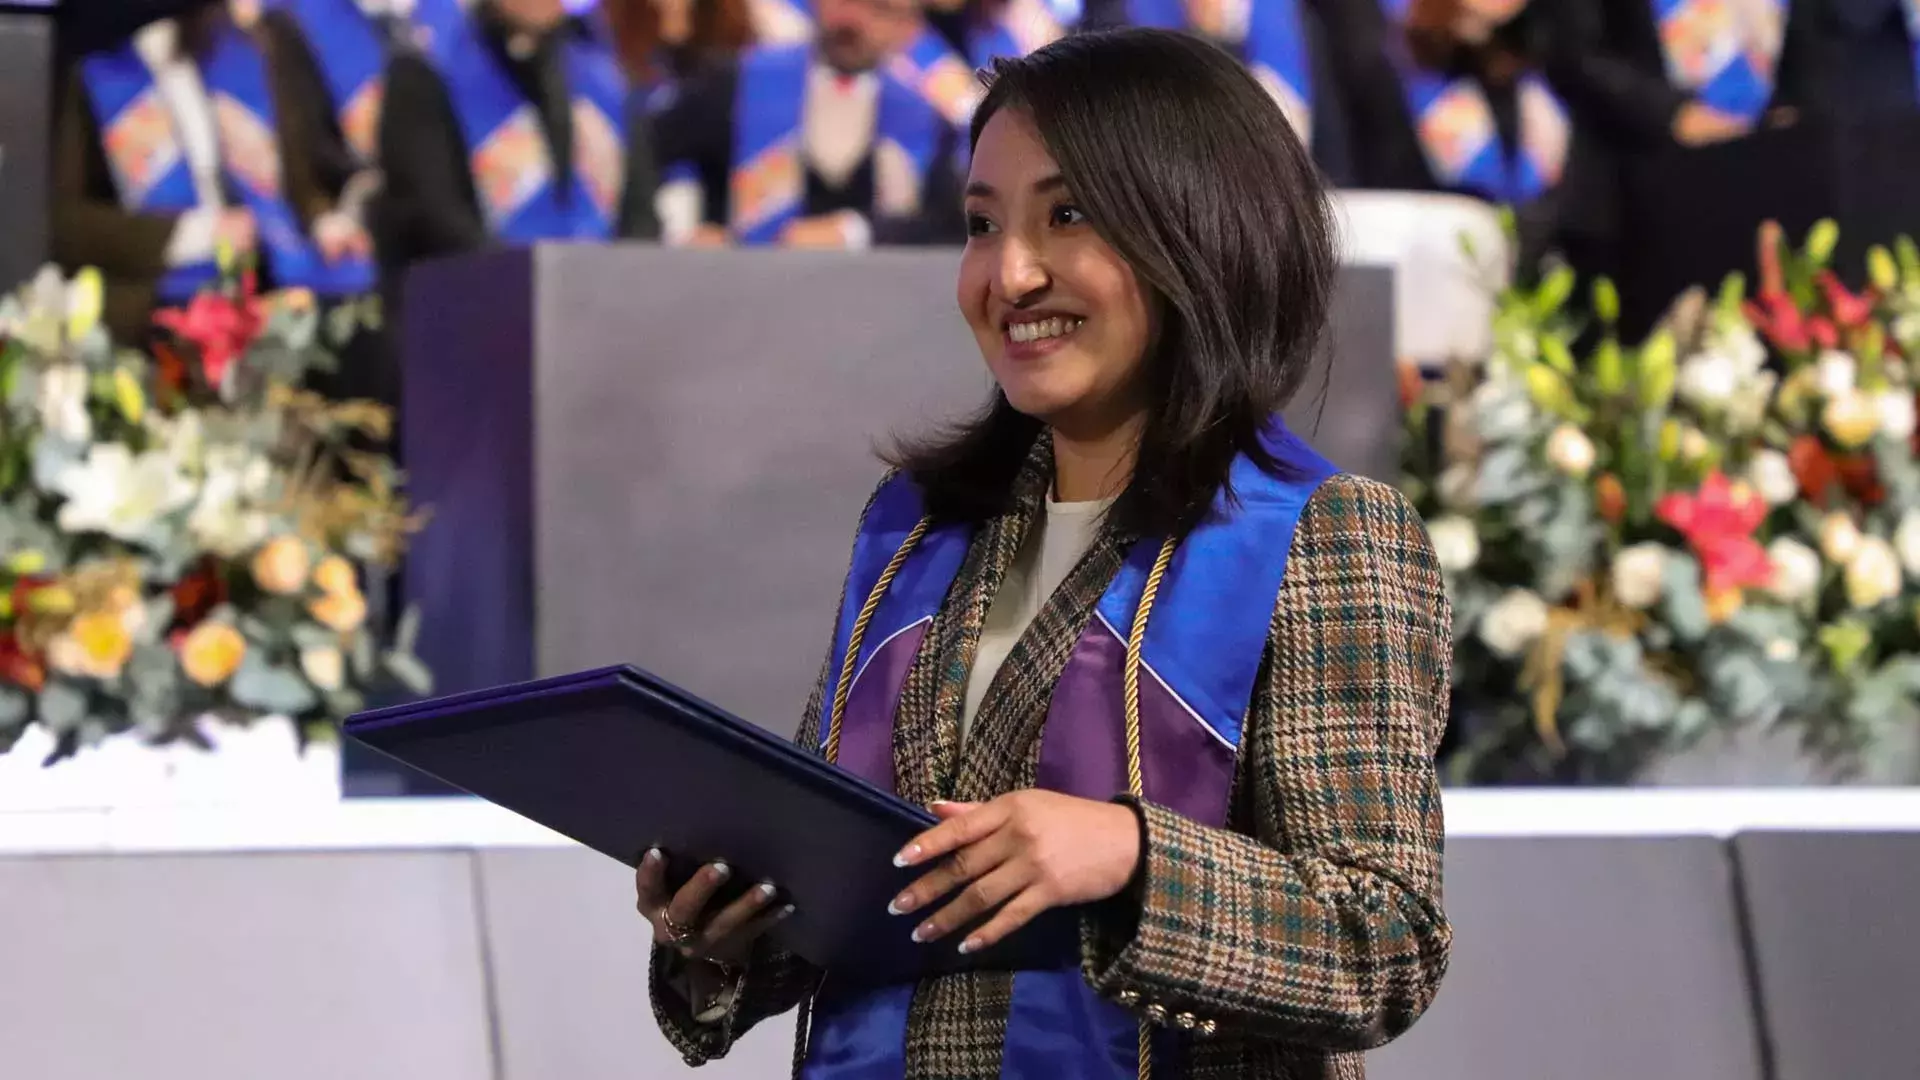 Egresada del Tec campus Toluca sonríe después de recibir su título profesional.